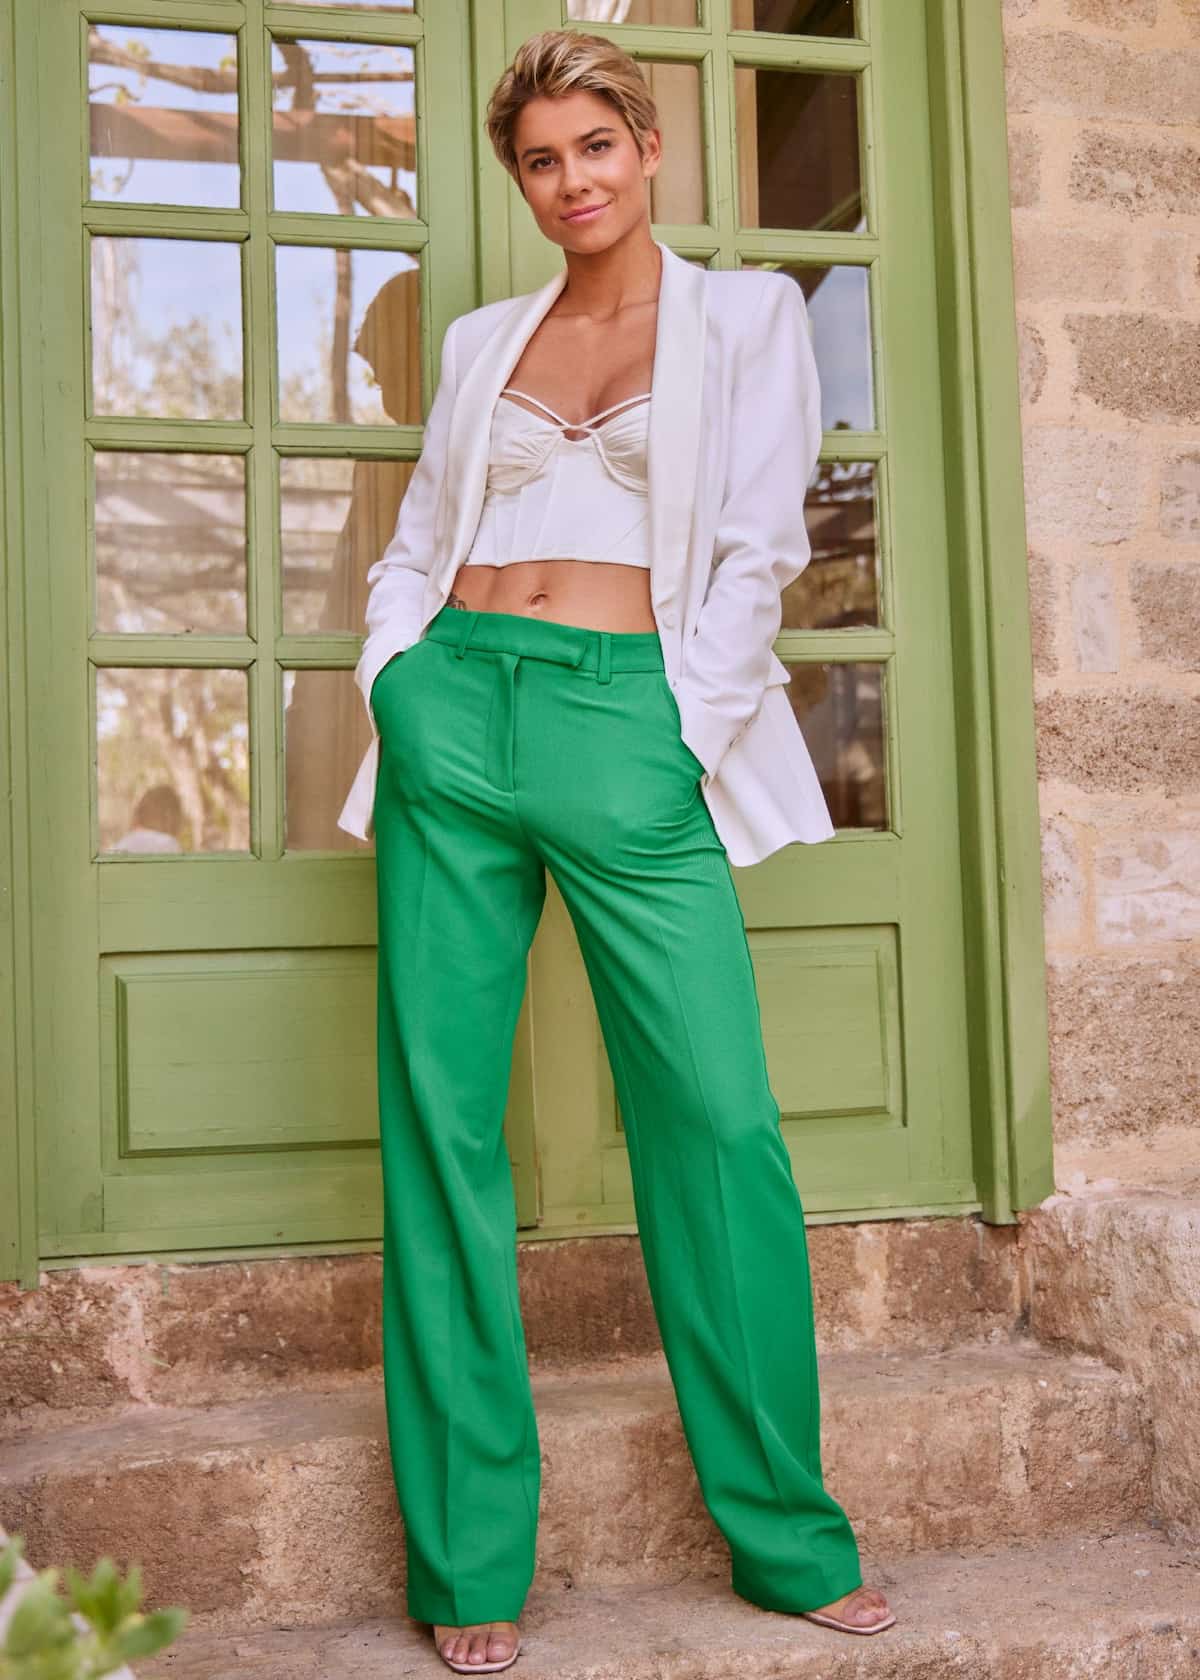 Hanna als Princess Charming 2022 - hier im Bild Hanna Sökeland in einer grünen Hose, weißen Blazer und einem bauchfreien Corsagen-Top